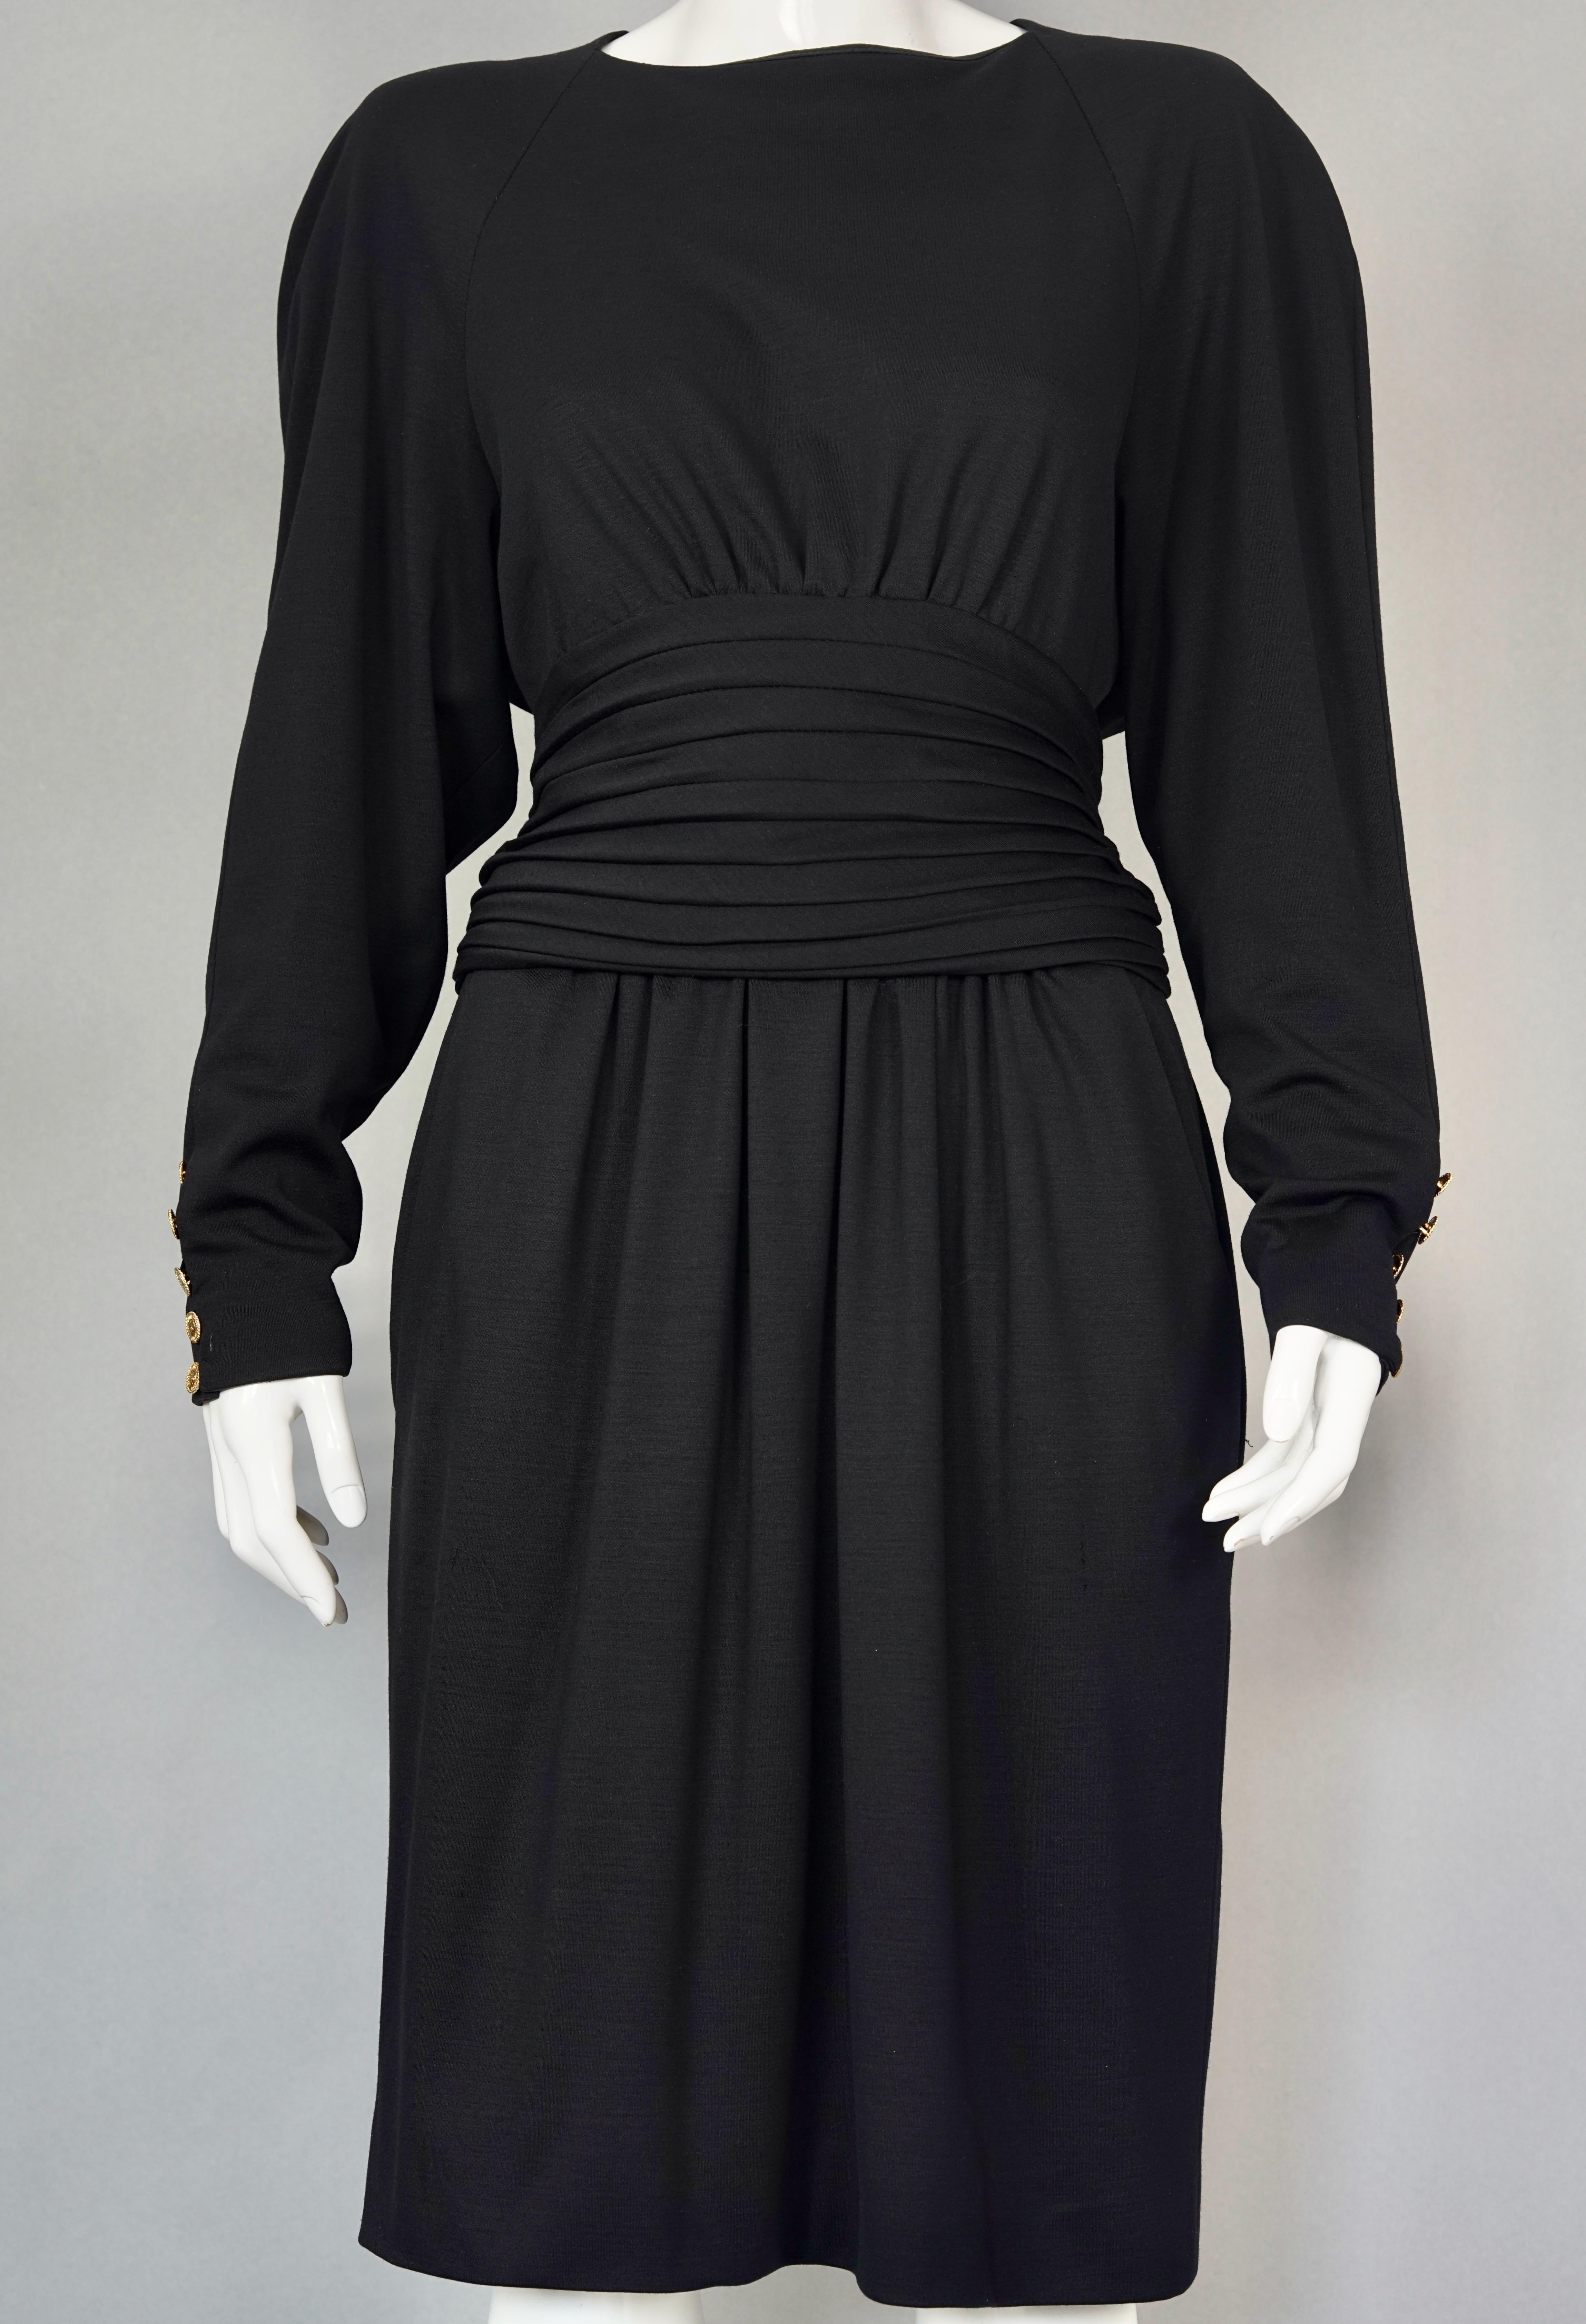 Vintage CHANEL BOUTIQUE Cummerbund Button Down Wool Silk Black Dress

Measurements taken laid flat, please double bust, waist and hips:
Shoulder: 18.50 inches (47 cm)
Sleeves: 23.42 inches (59.5 cm)
Bust: 18.50 inches (47 cm)
Waist: 15.74 inches (40